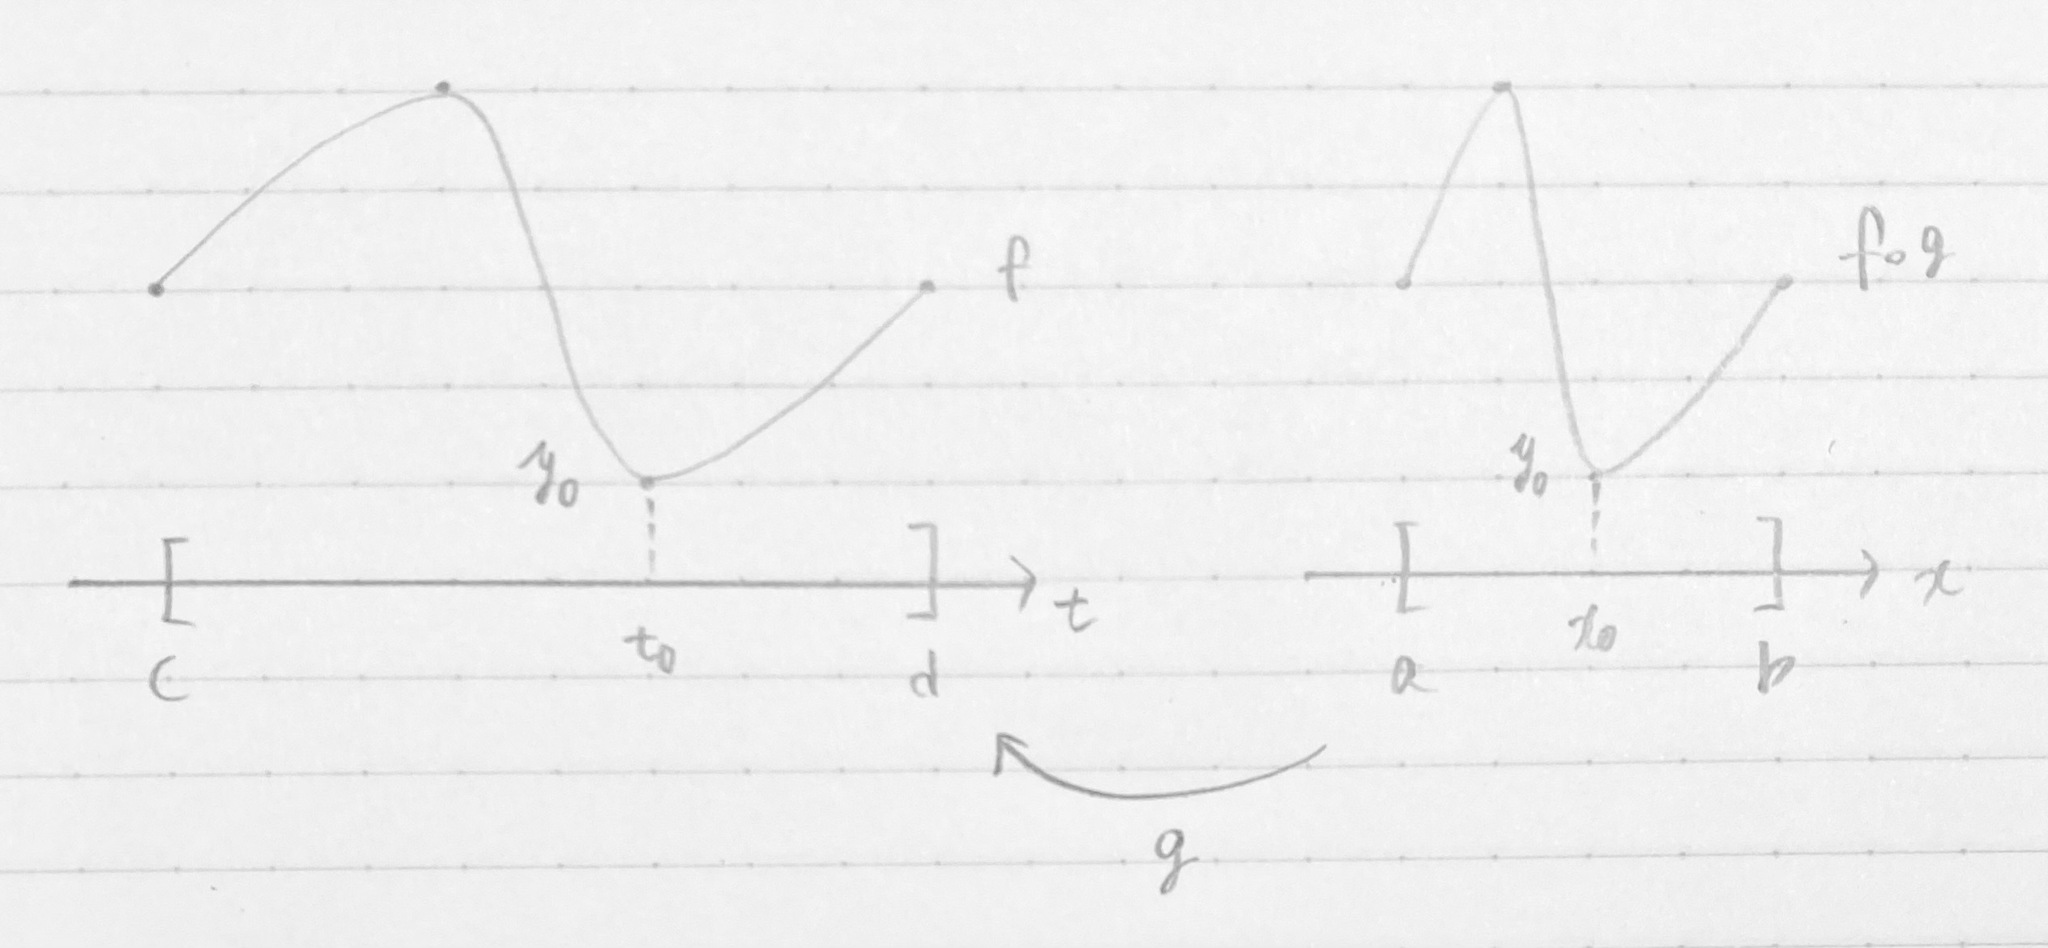 [c, d] 上の関数 f と [a, b] 上の関数 f∘g